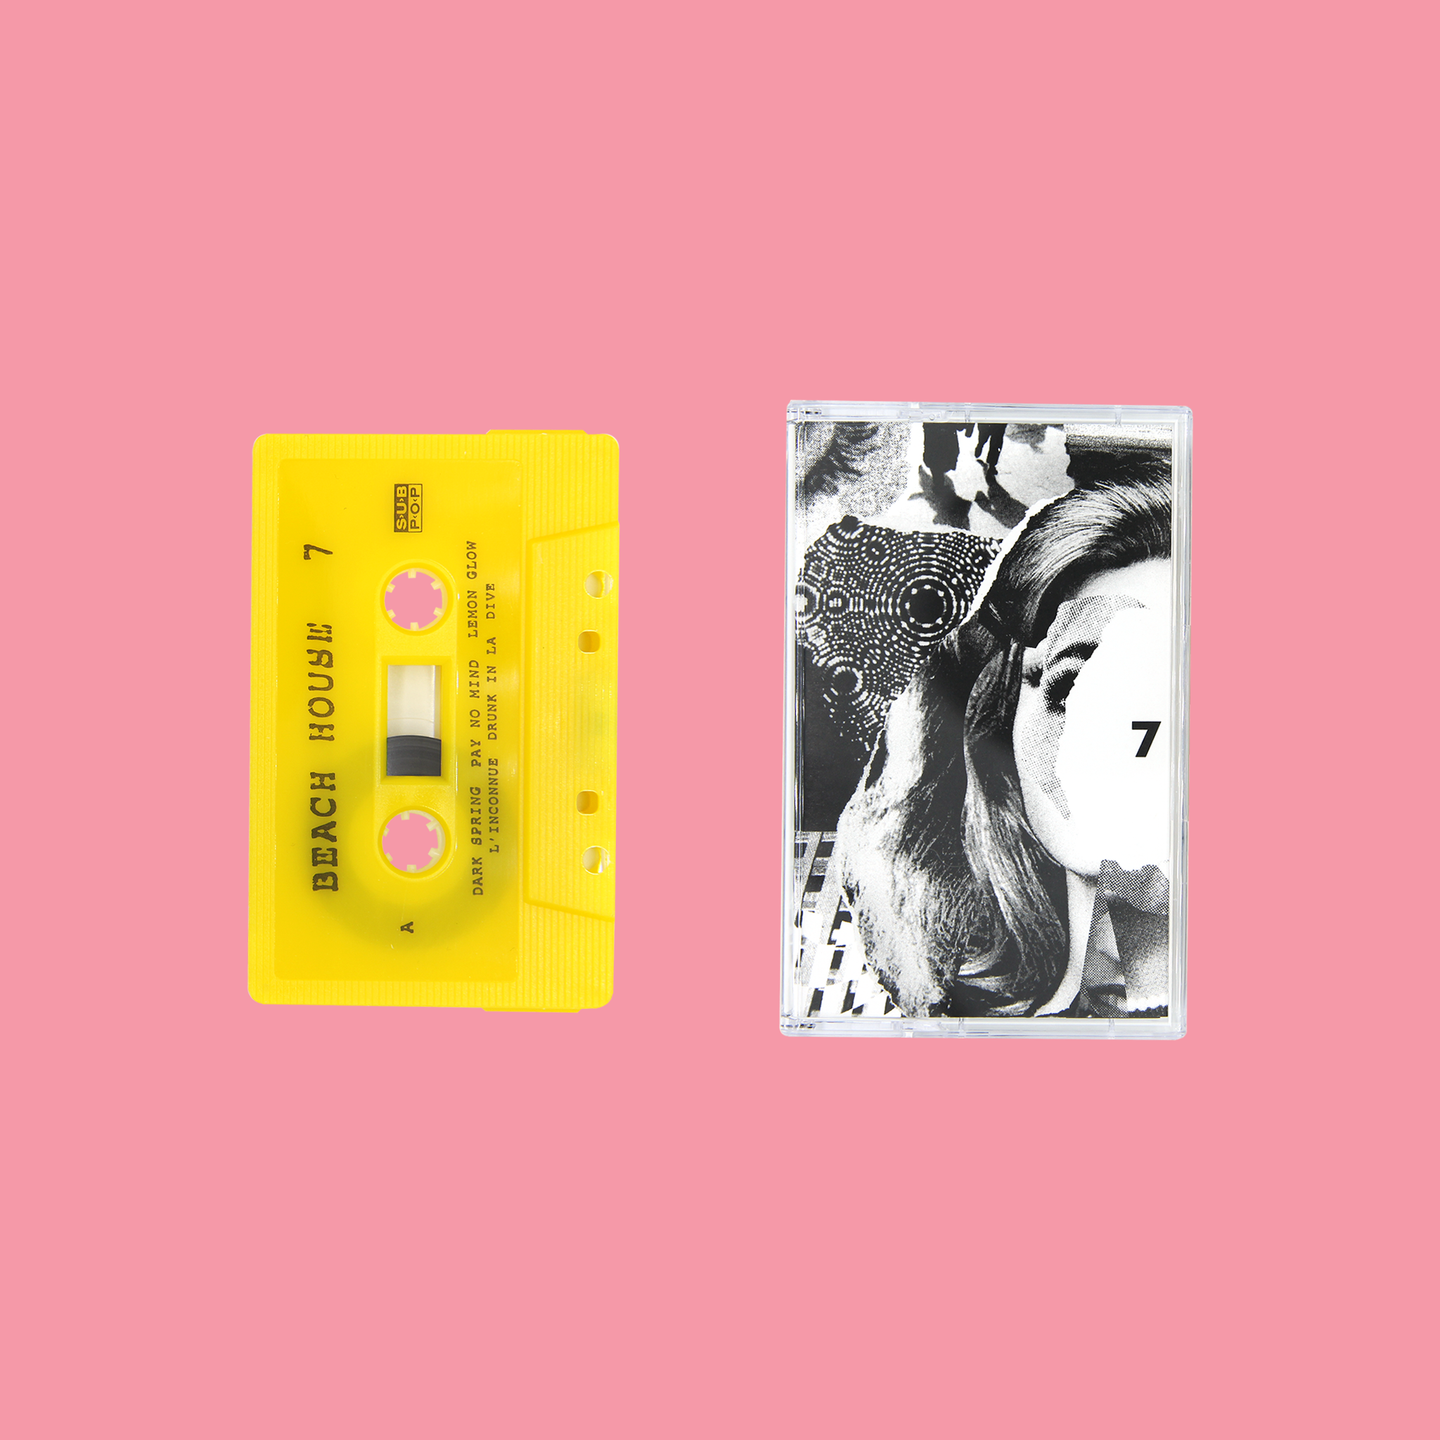 7 Cassette Tape